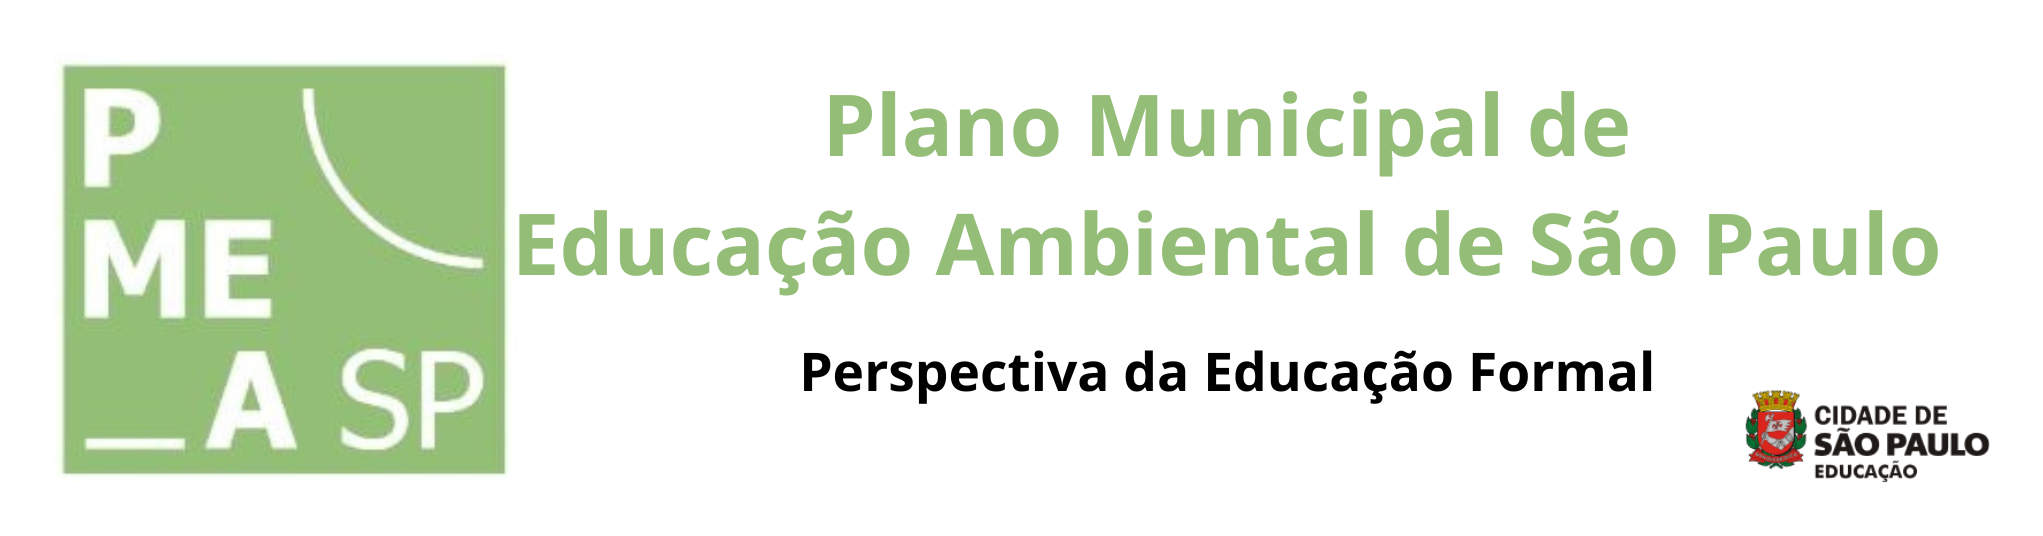 Banner logo do Plano Municipal de Educação Ambiental na perspectiva da Educação Formal